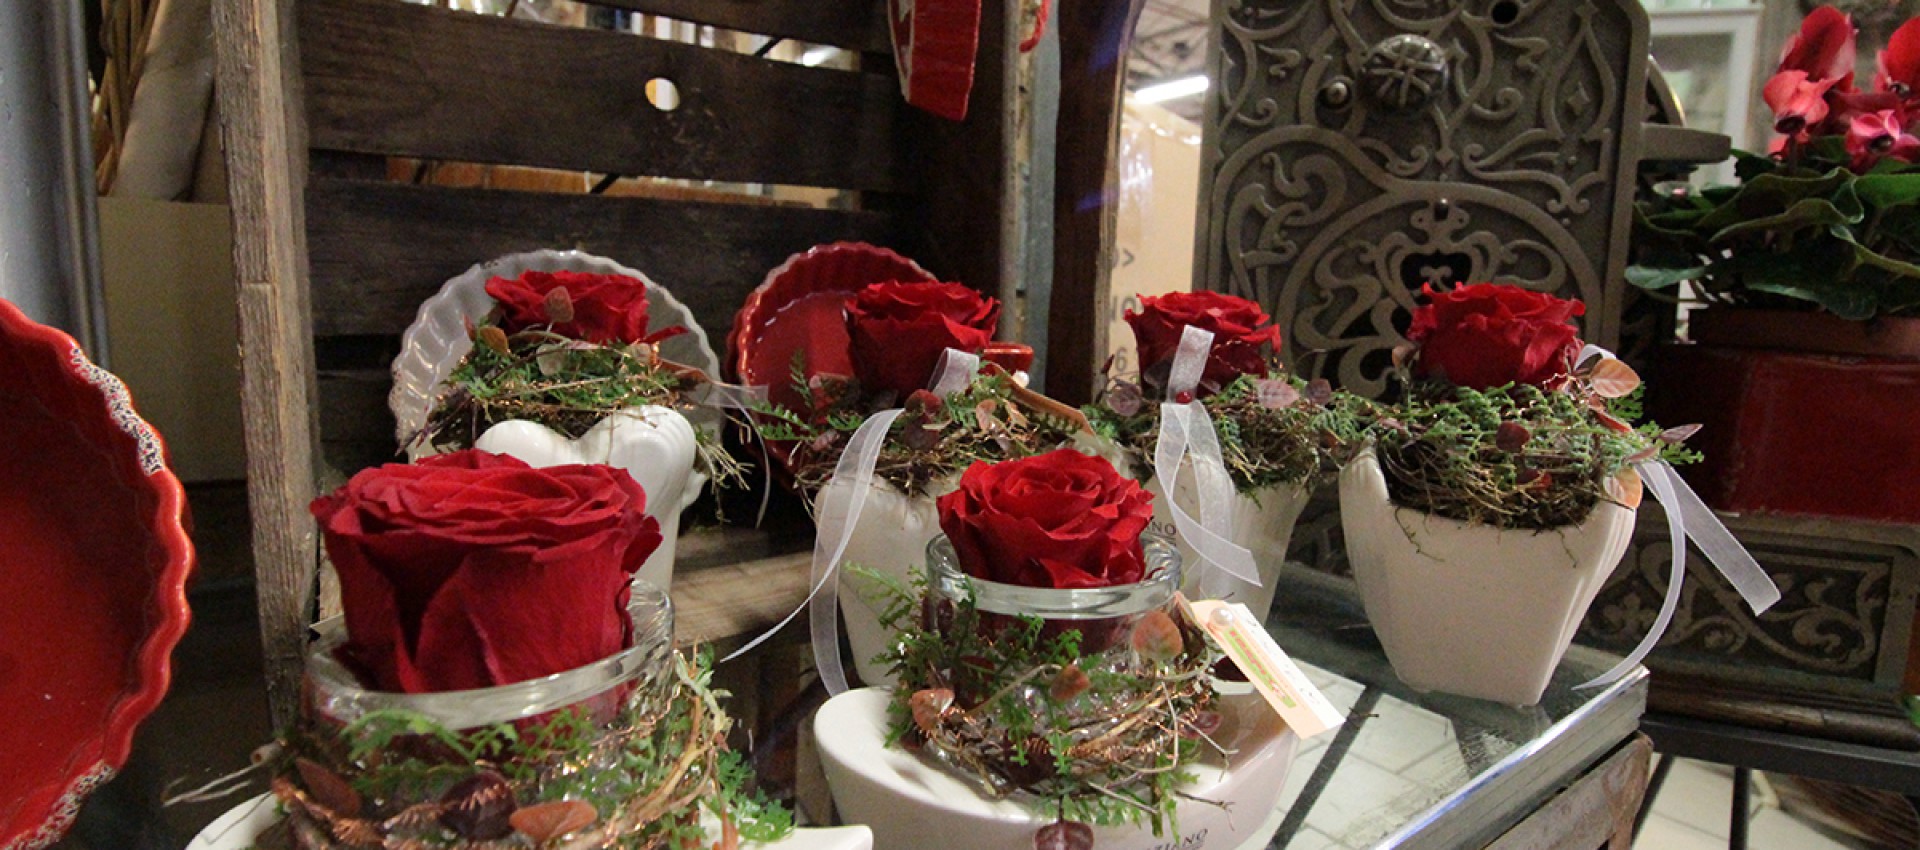 Valentinstag - schöne Geschenkideen jetzt bei Blumen Kiesel